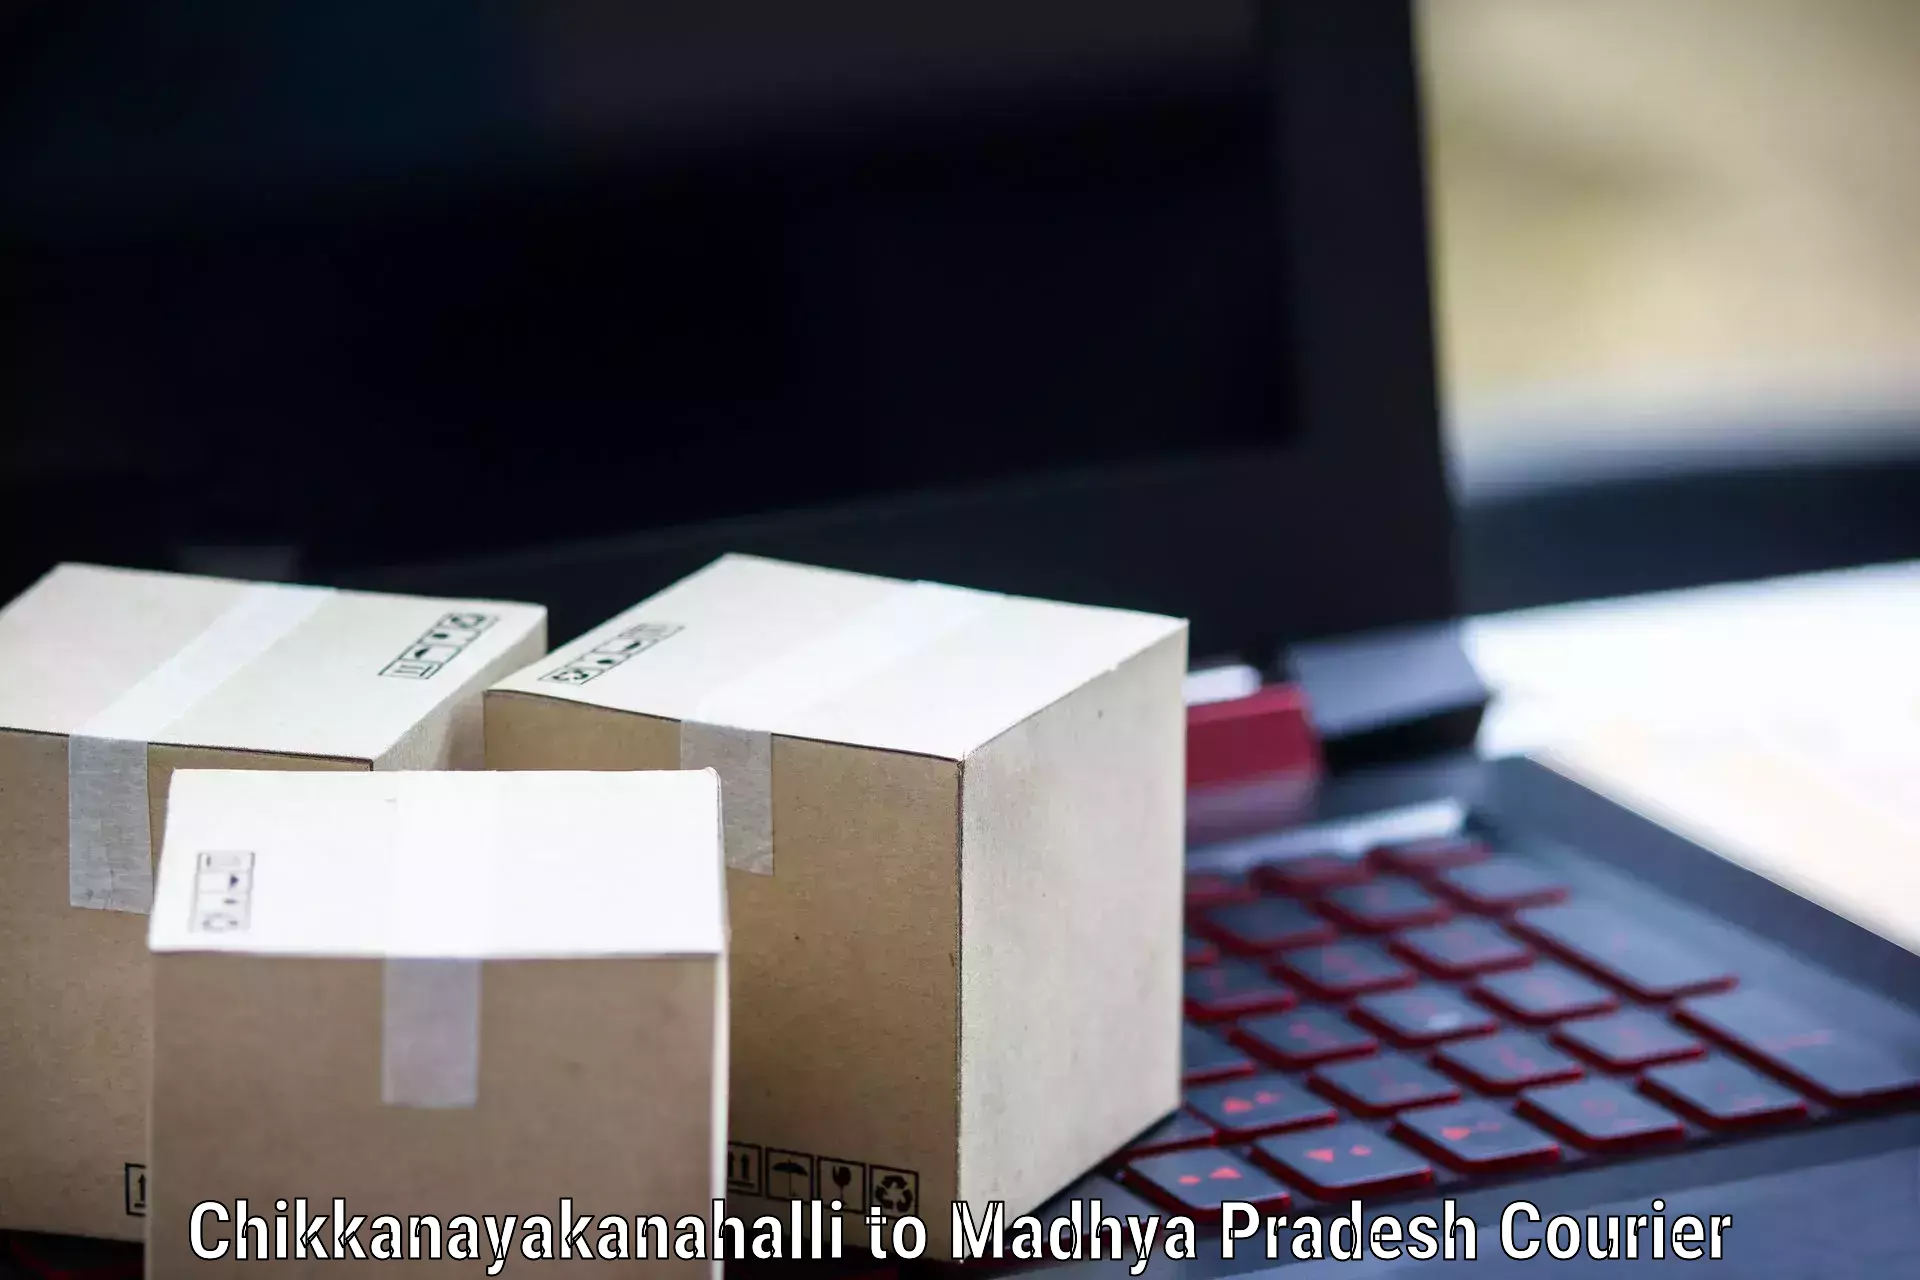 Digital courier platforms Chikkanayakanahalli to Madhya Pradesh